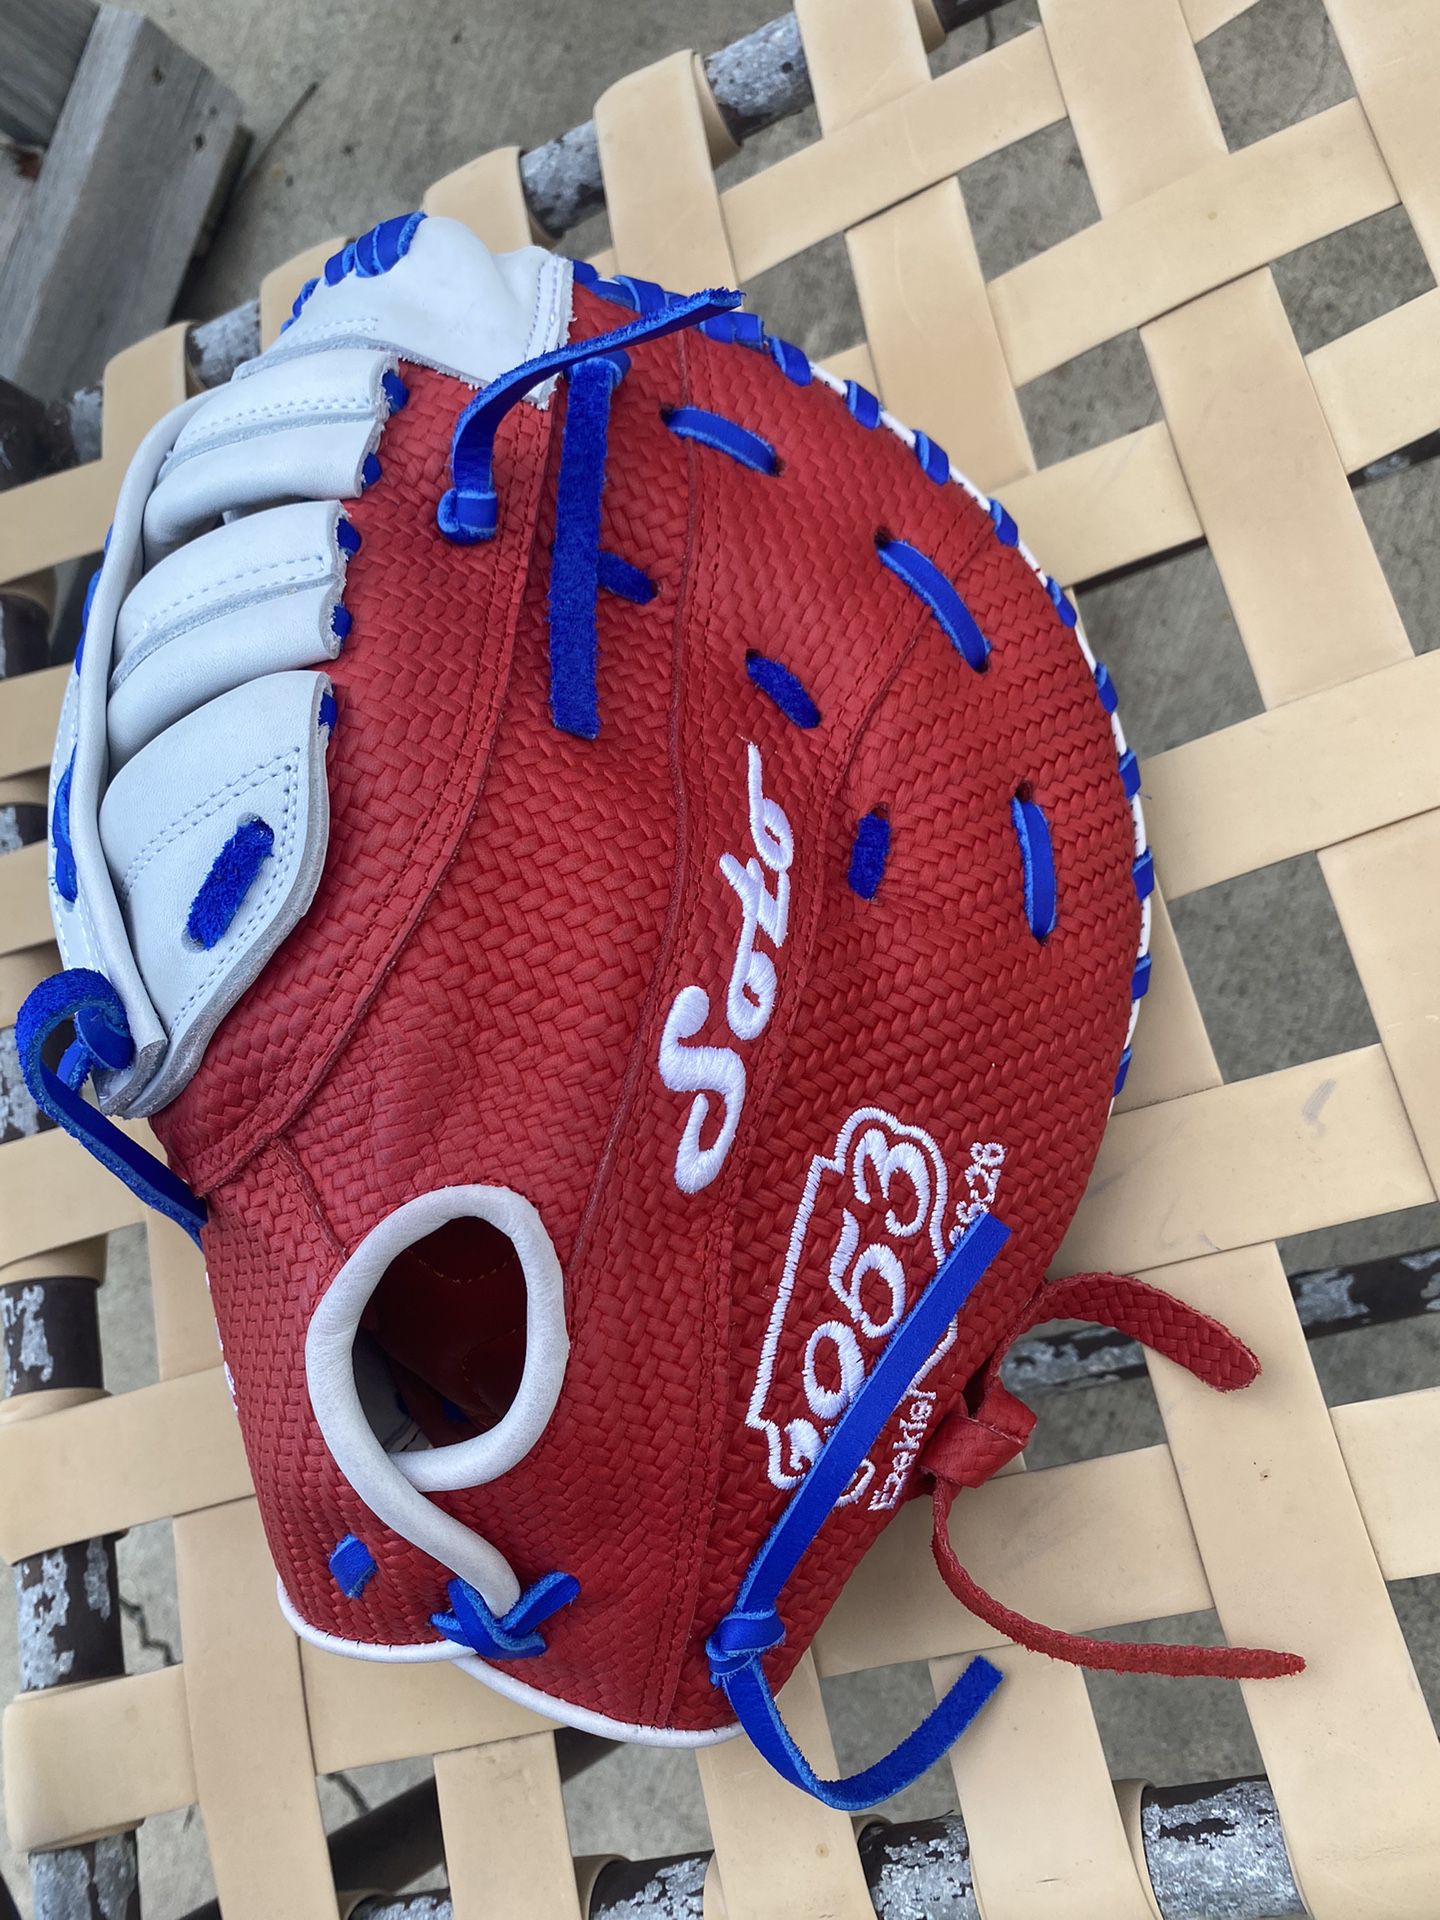 First Baseman’s Glove (mistake Glove)